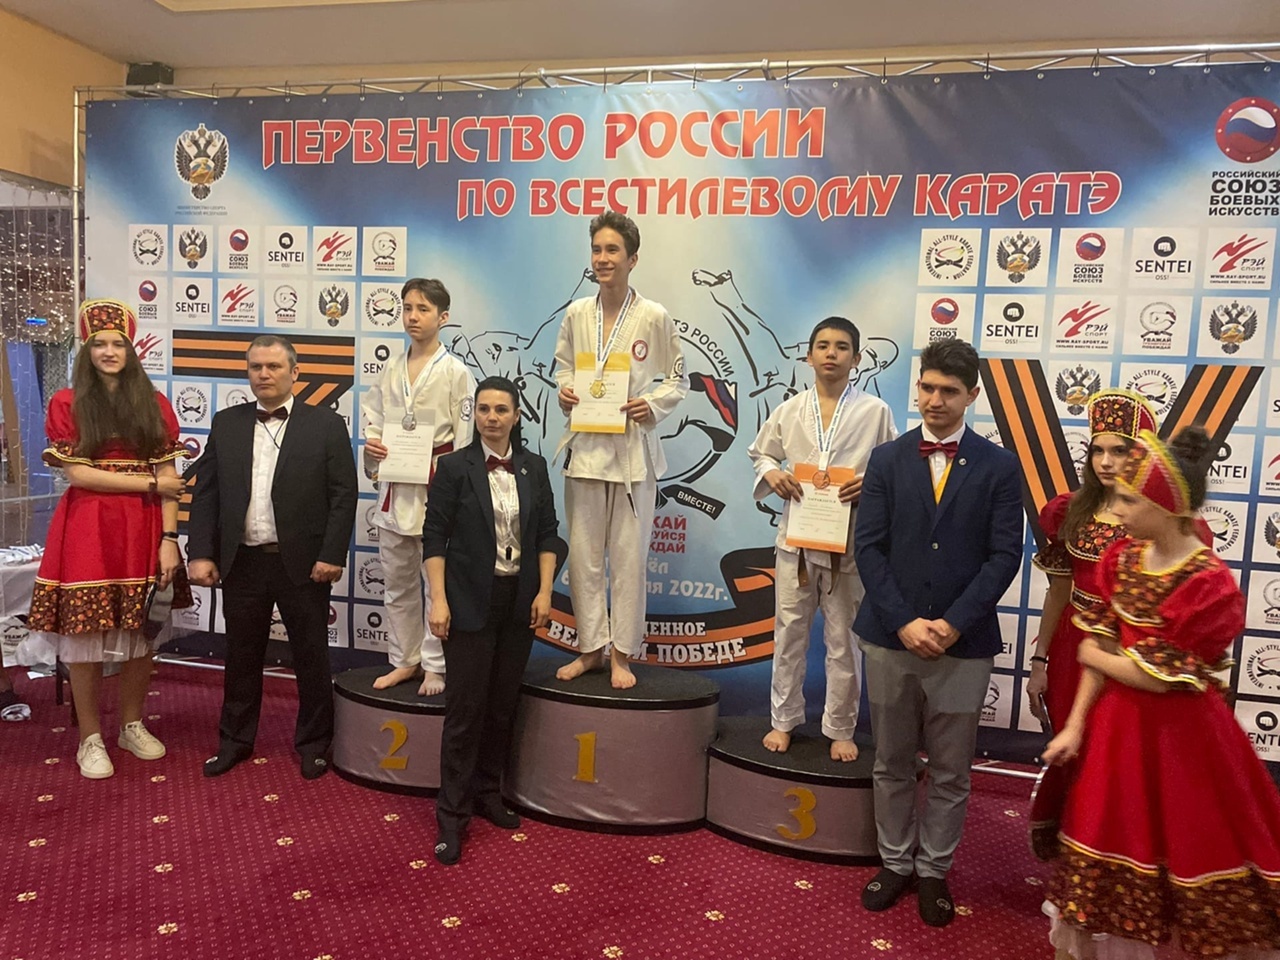 Стерлитамакские спортсмены достойно выступили на первенстве России по всестилевому каратэ